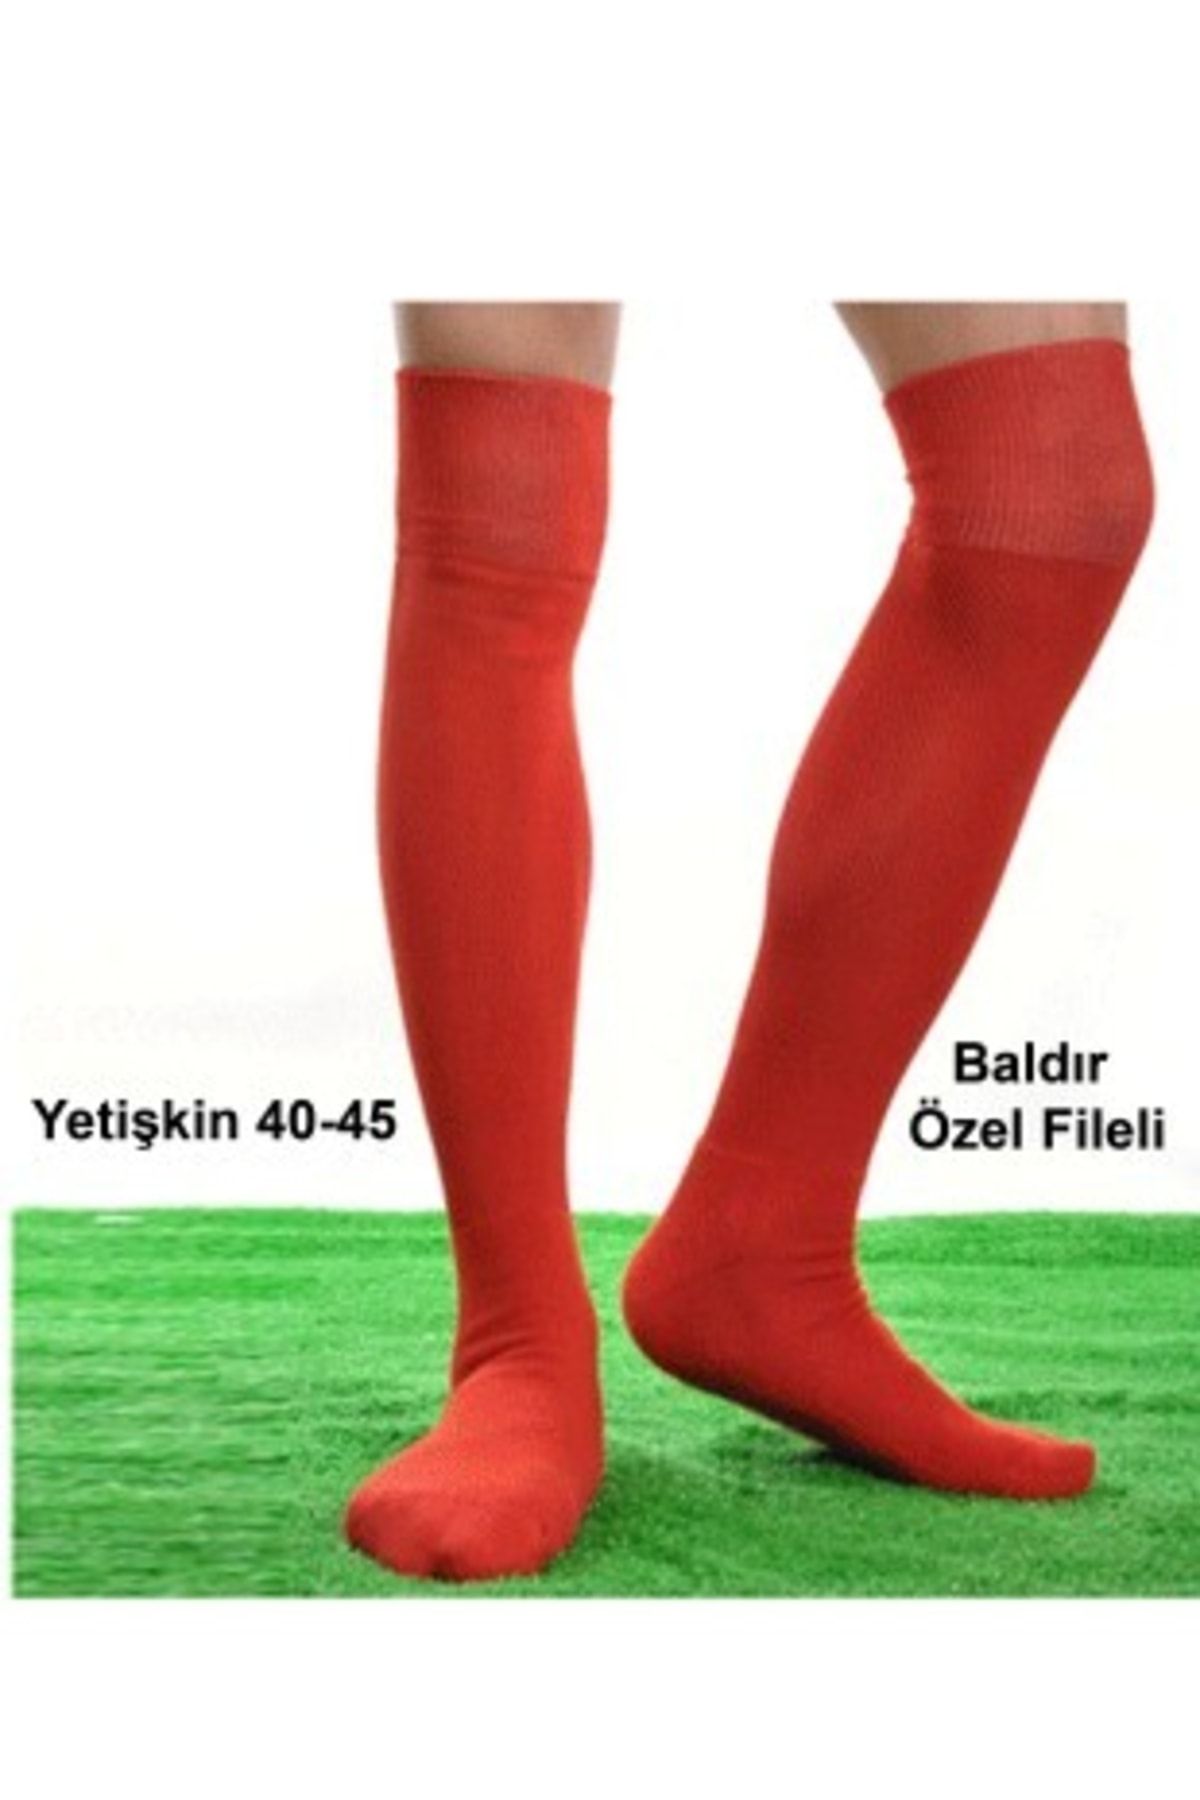 Liggo Profesyonel Futbol Maç Çorabı Baldır Fileli Tozluk Konç